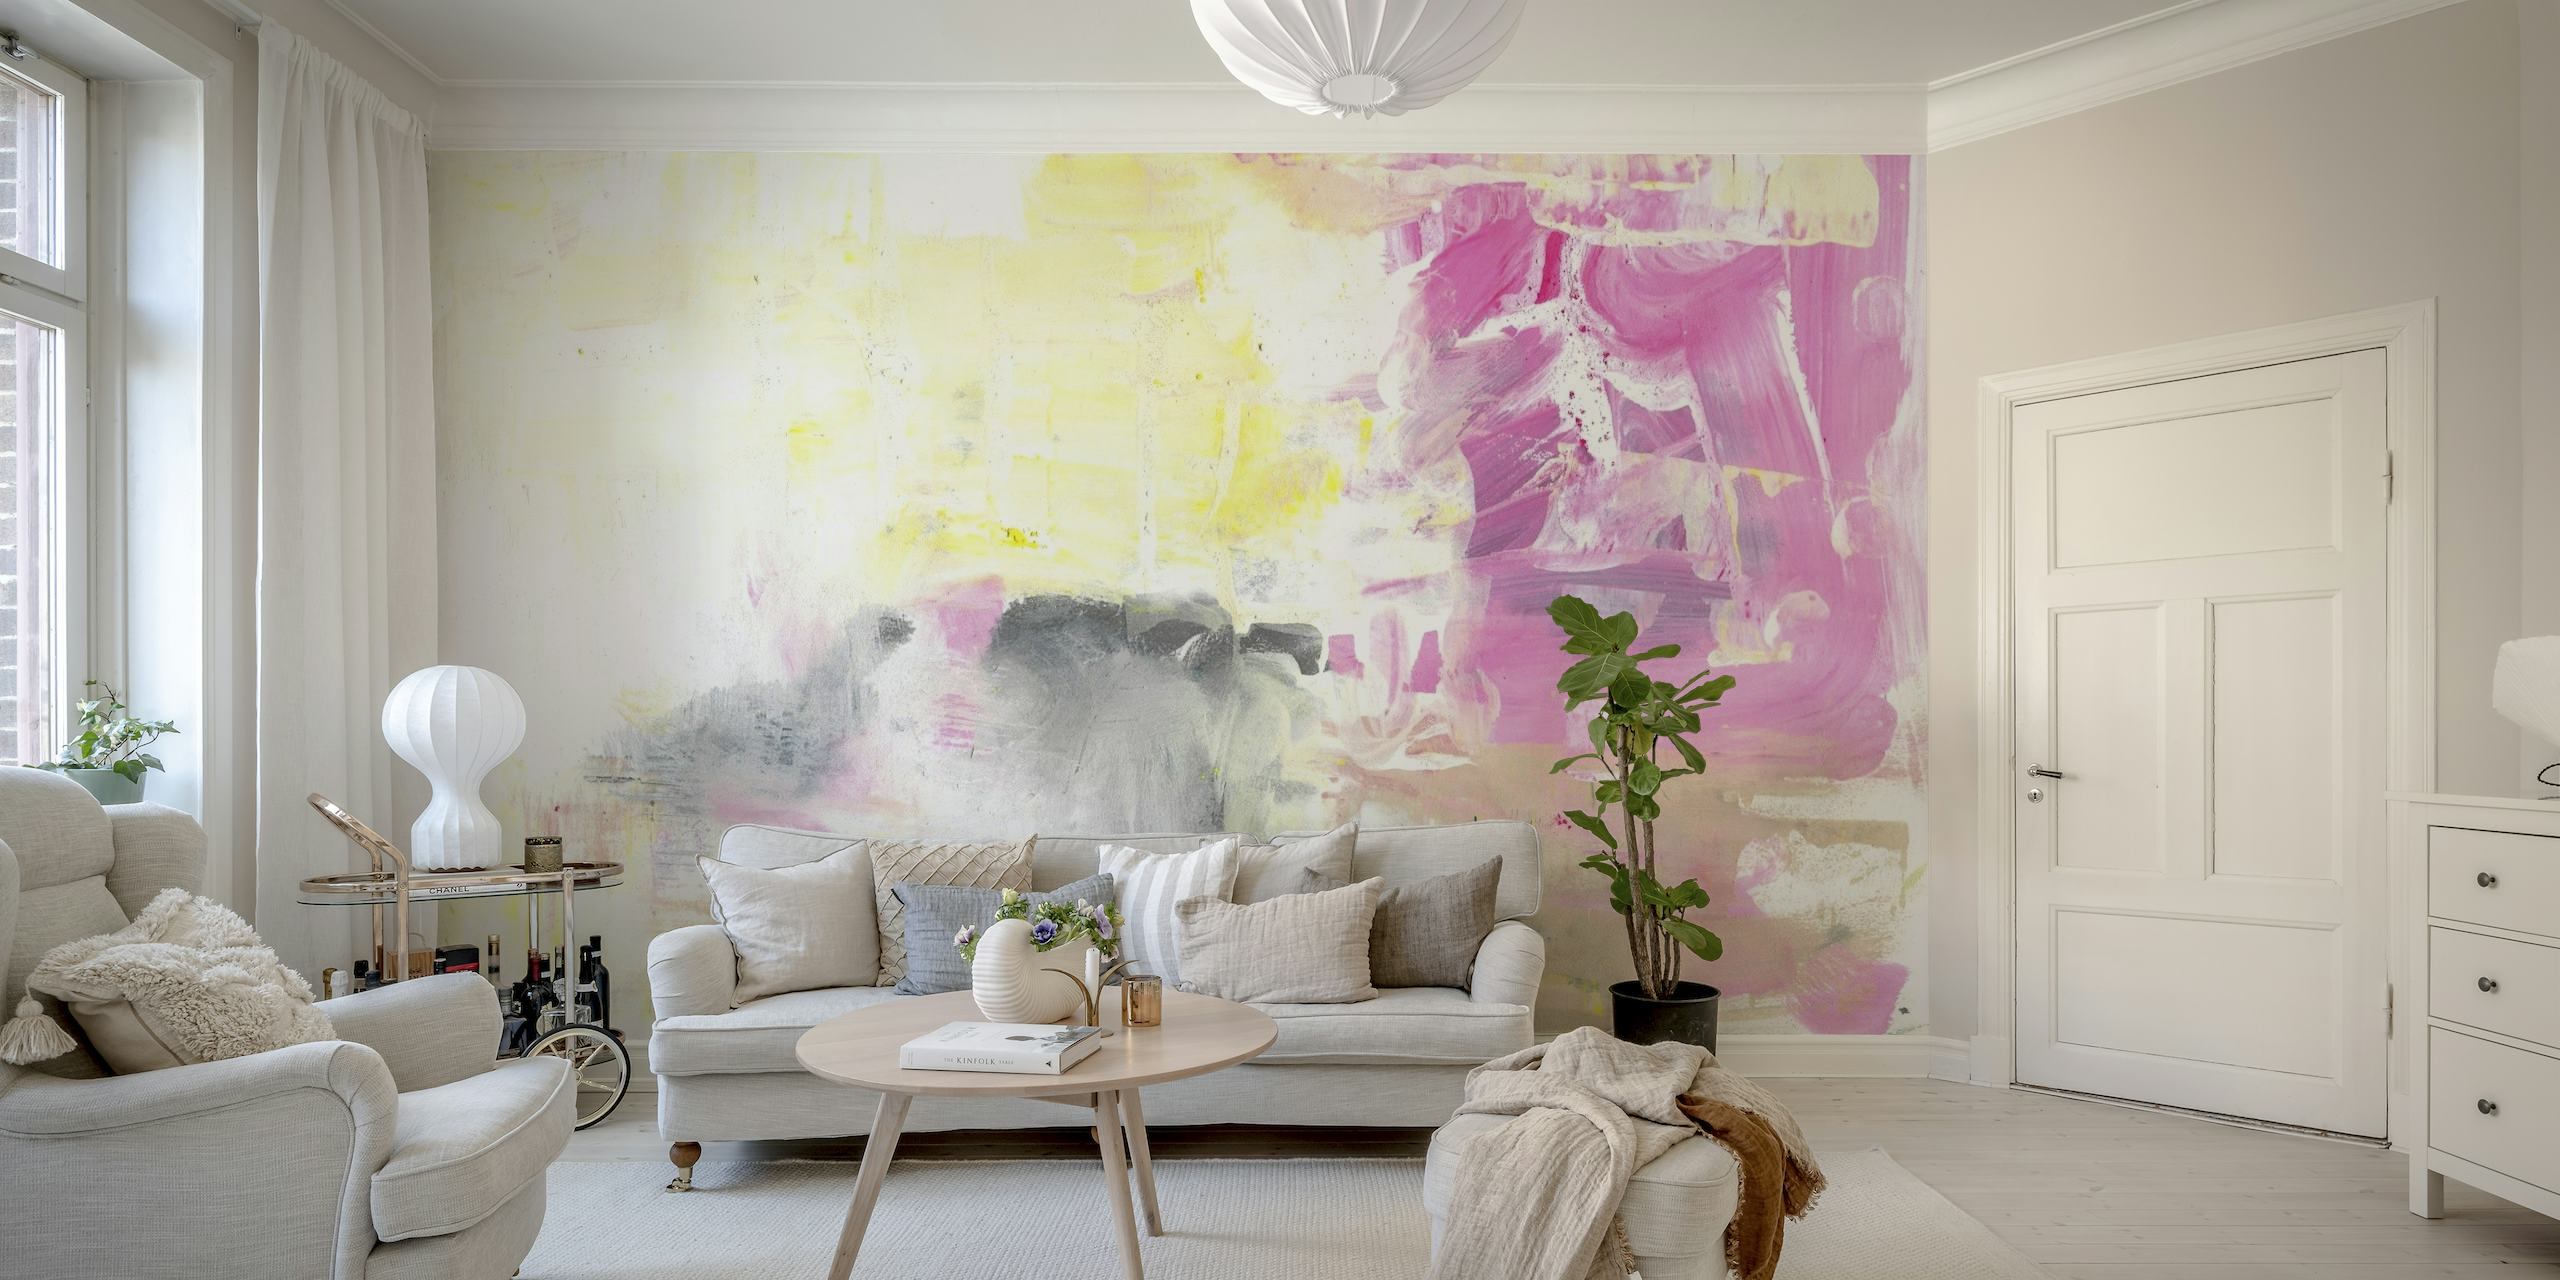 Mural de parede Abstract Painting No 17 com tons suaves de rosa, cinza e branco com pinceladas expressivas